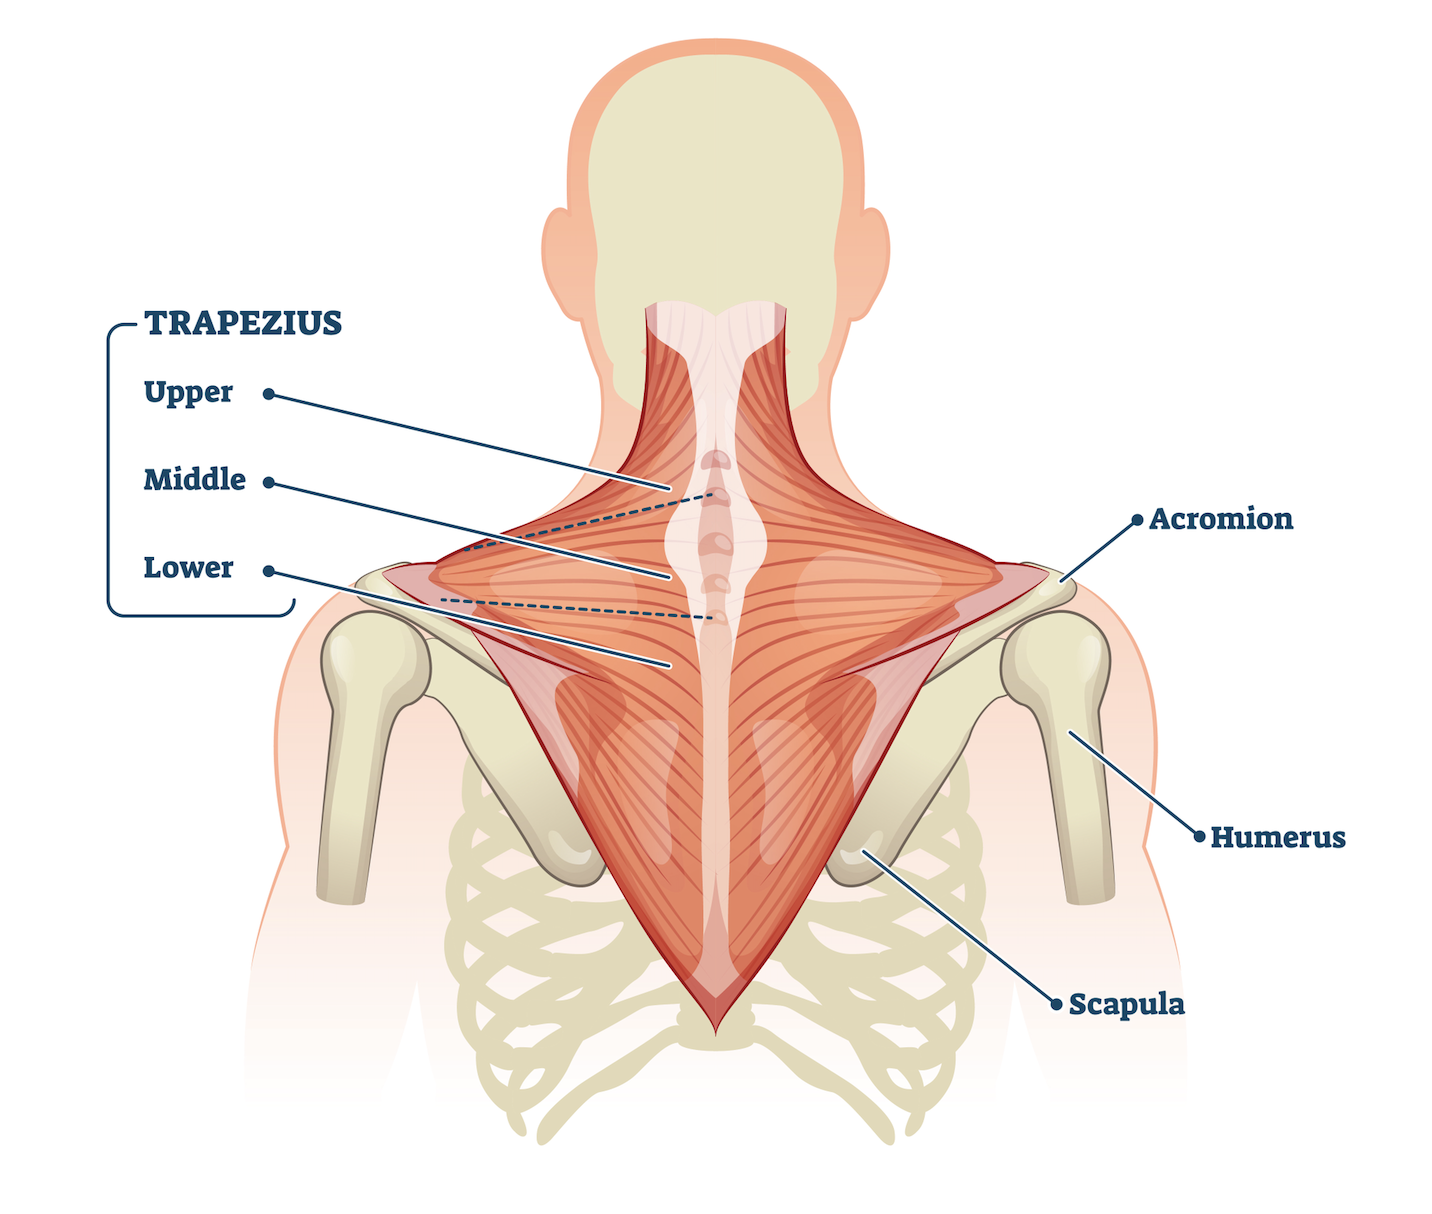 Trapezius back muscles anatomy